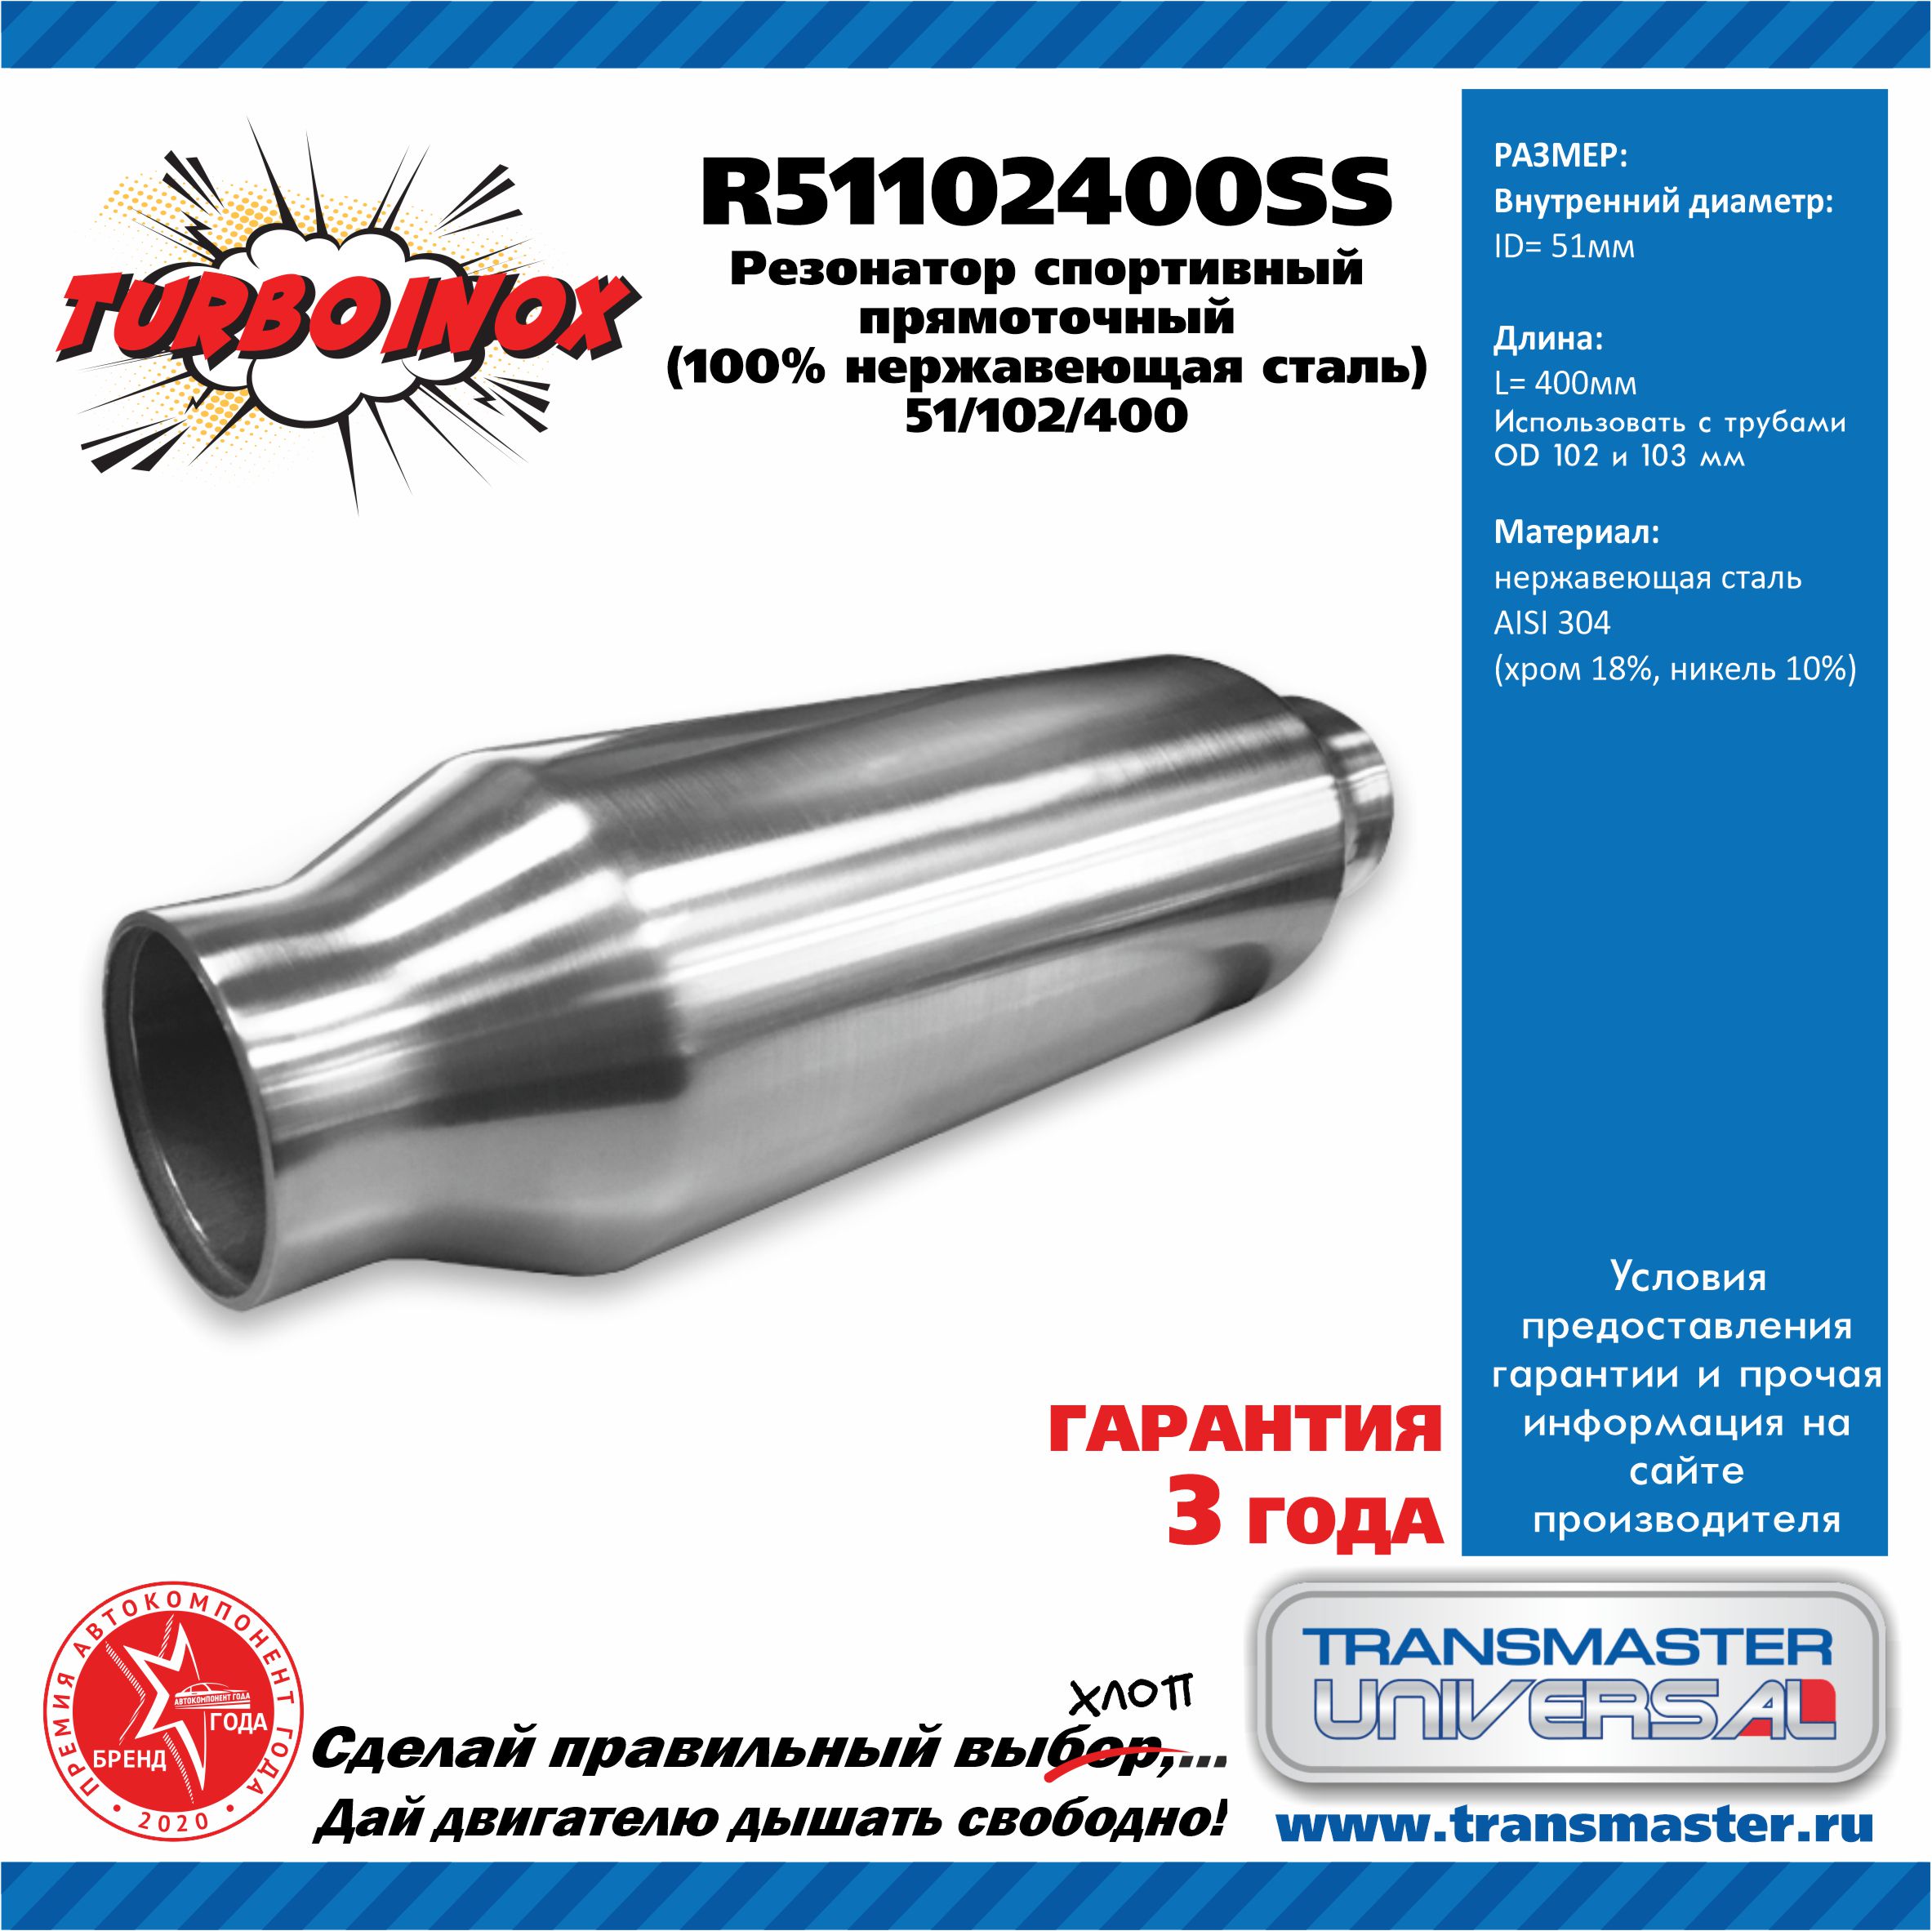 Резонатор спортивный прямоточный серия turboinox (100% нержавеющая сталь) - TRANSMASTER UNIVERSAL R51102400SS